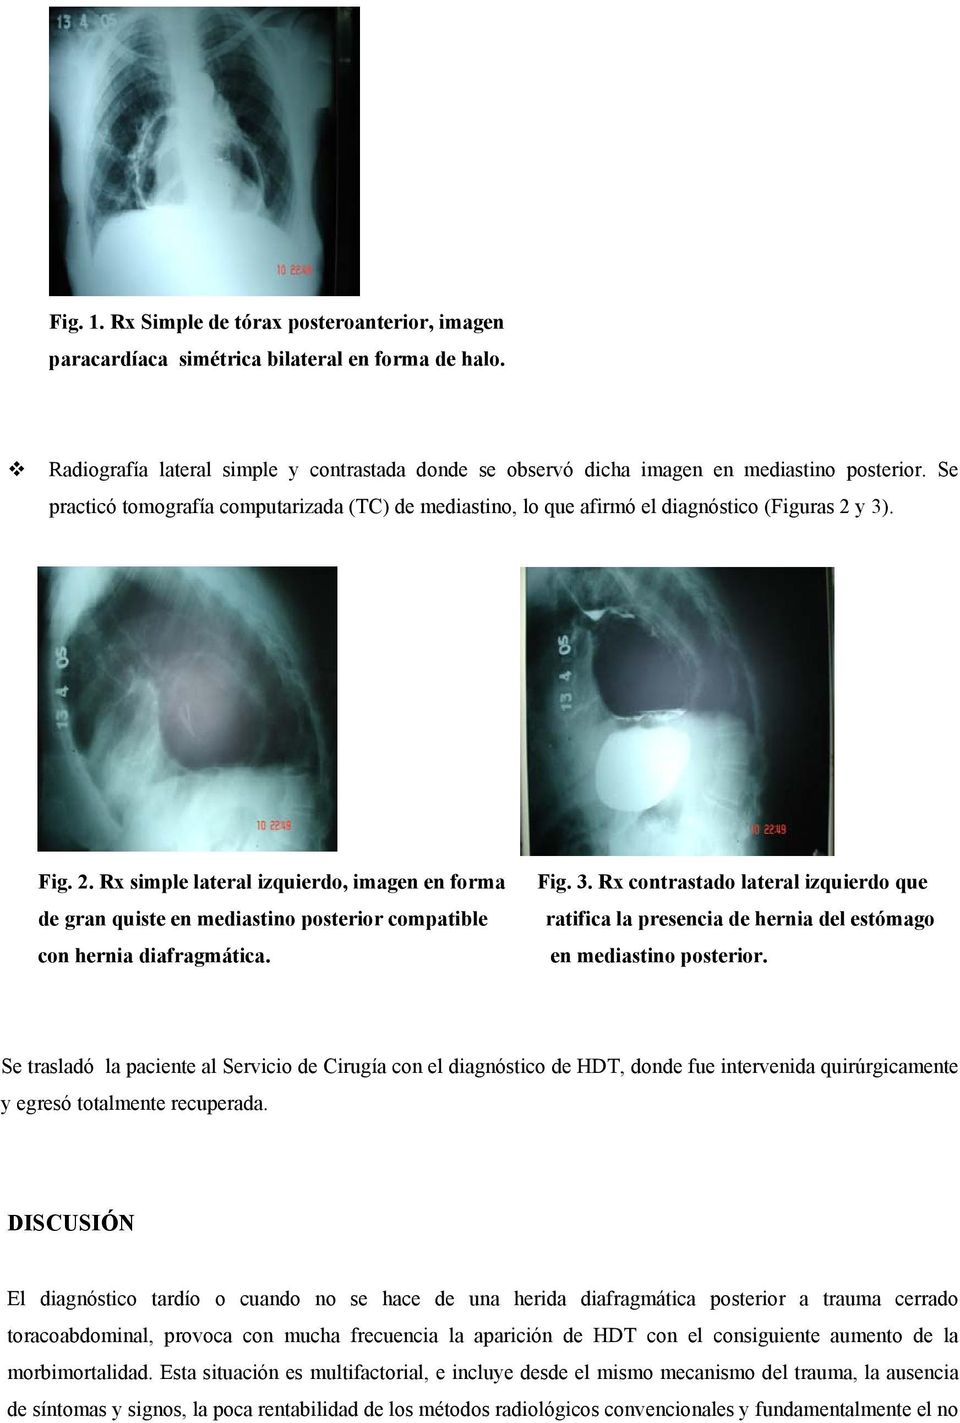 y 3). Fig. 2. Rx simple lateral izquierdo, imagen en forma de gran quiste en mediastino posterior compatible con hernia diafragmática. Fig. 3. Rx contrastado lateral izquierdo que ratifica la presencia de hernia del estómago en mediastino posterior.